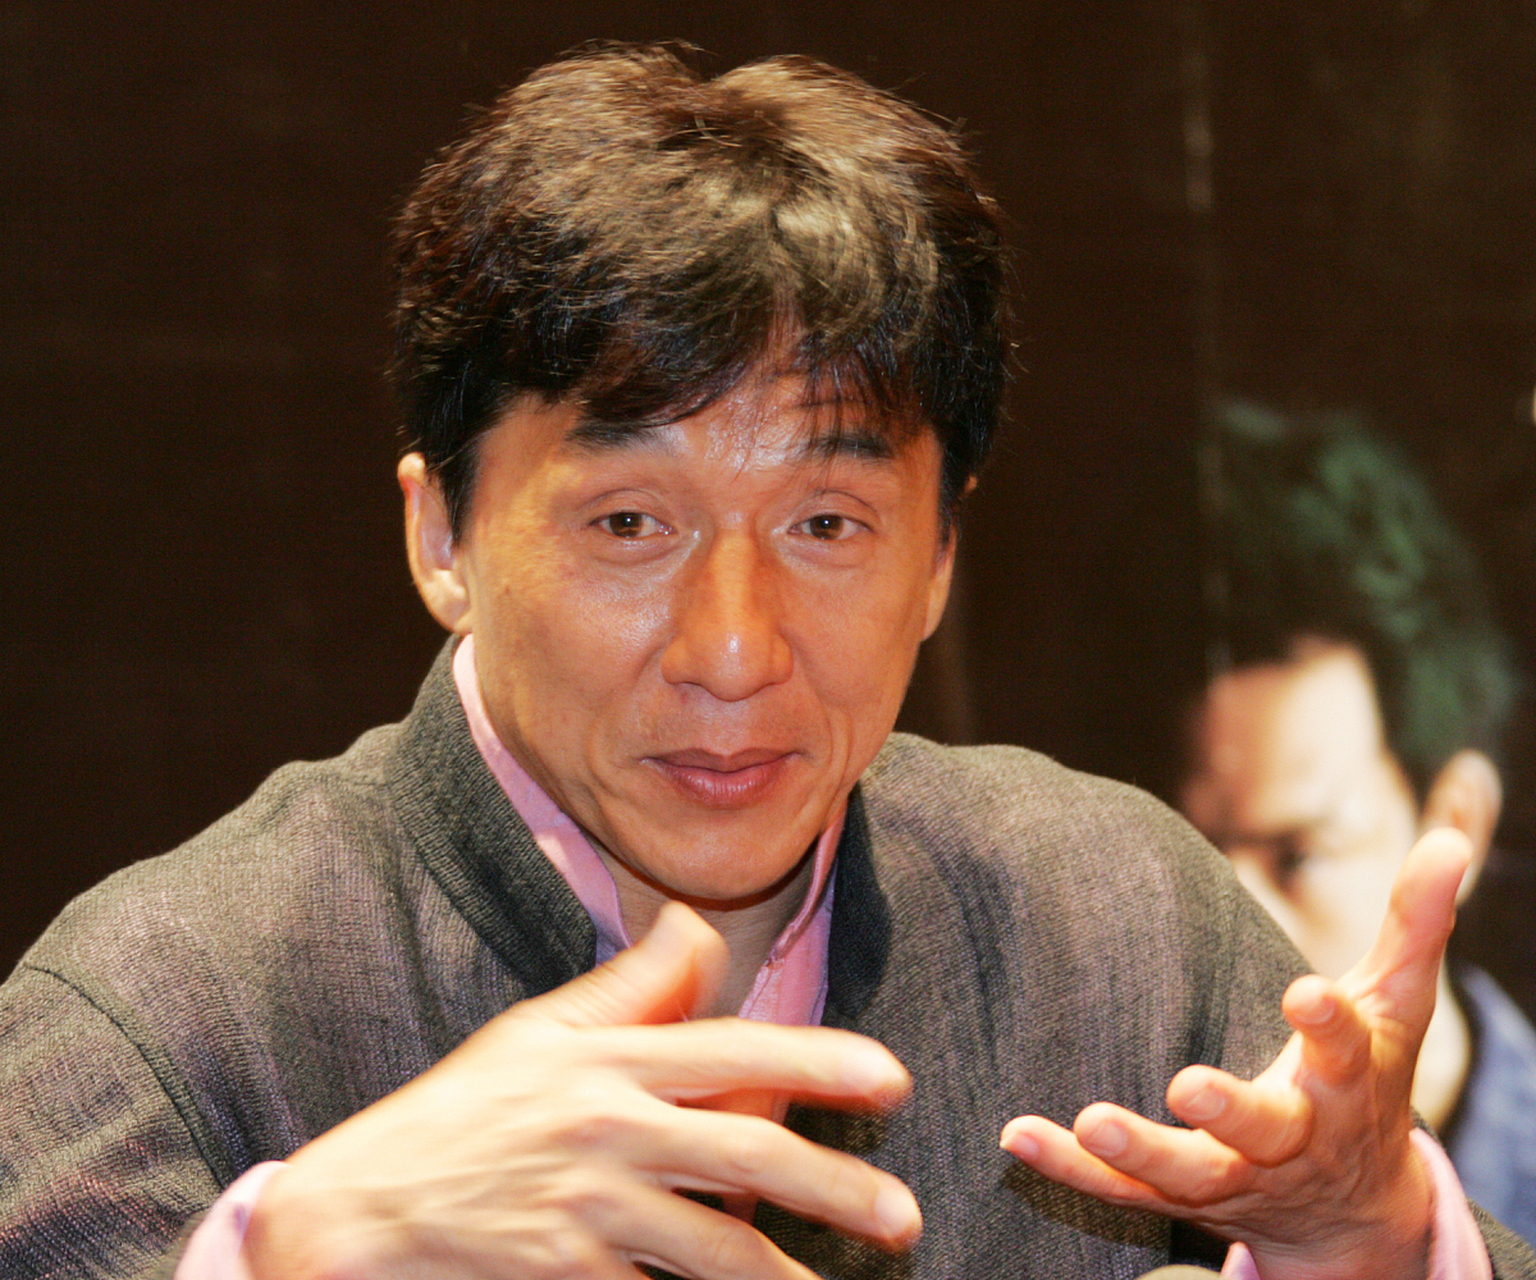 成龙作为中国电影界的巨星,凭借独特的功夫风格和幽默表演赢得了全球